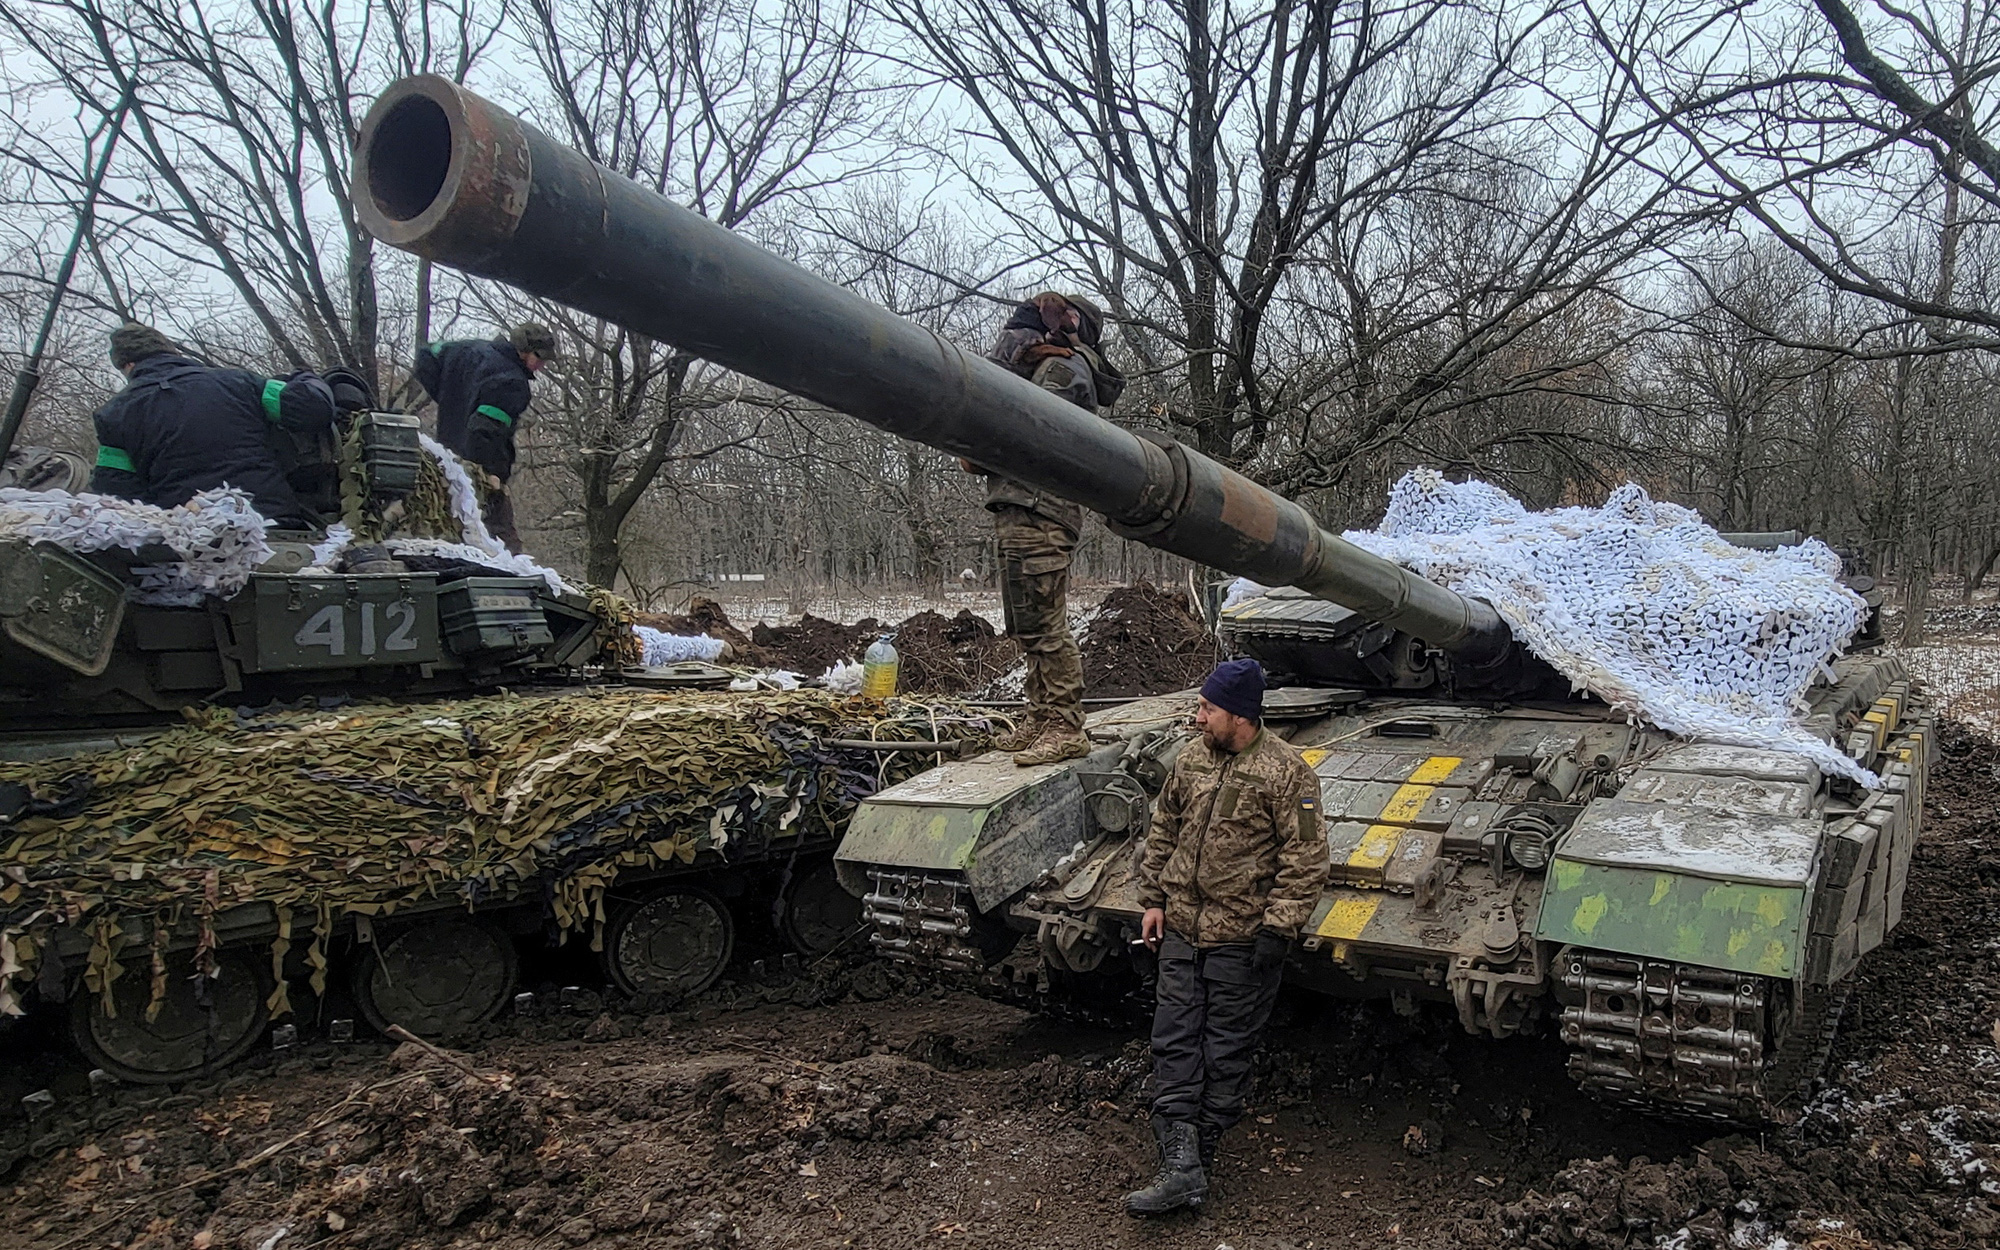 Ukraine nói sắp nhận hơn 120-140 xe tăng, riêng vụ F-16 tiếp tục gặp khó